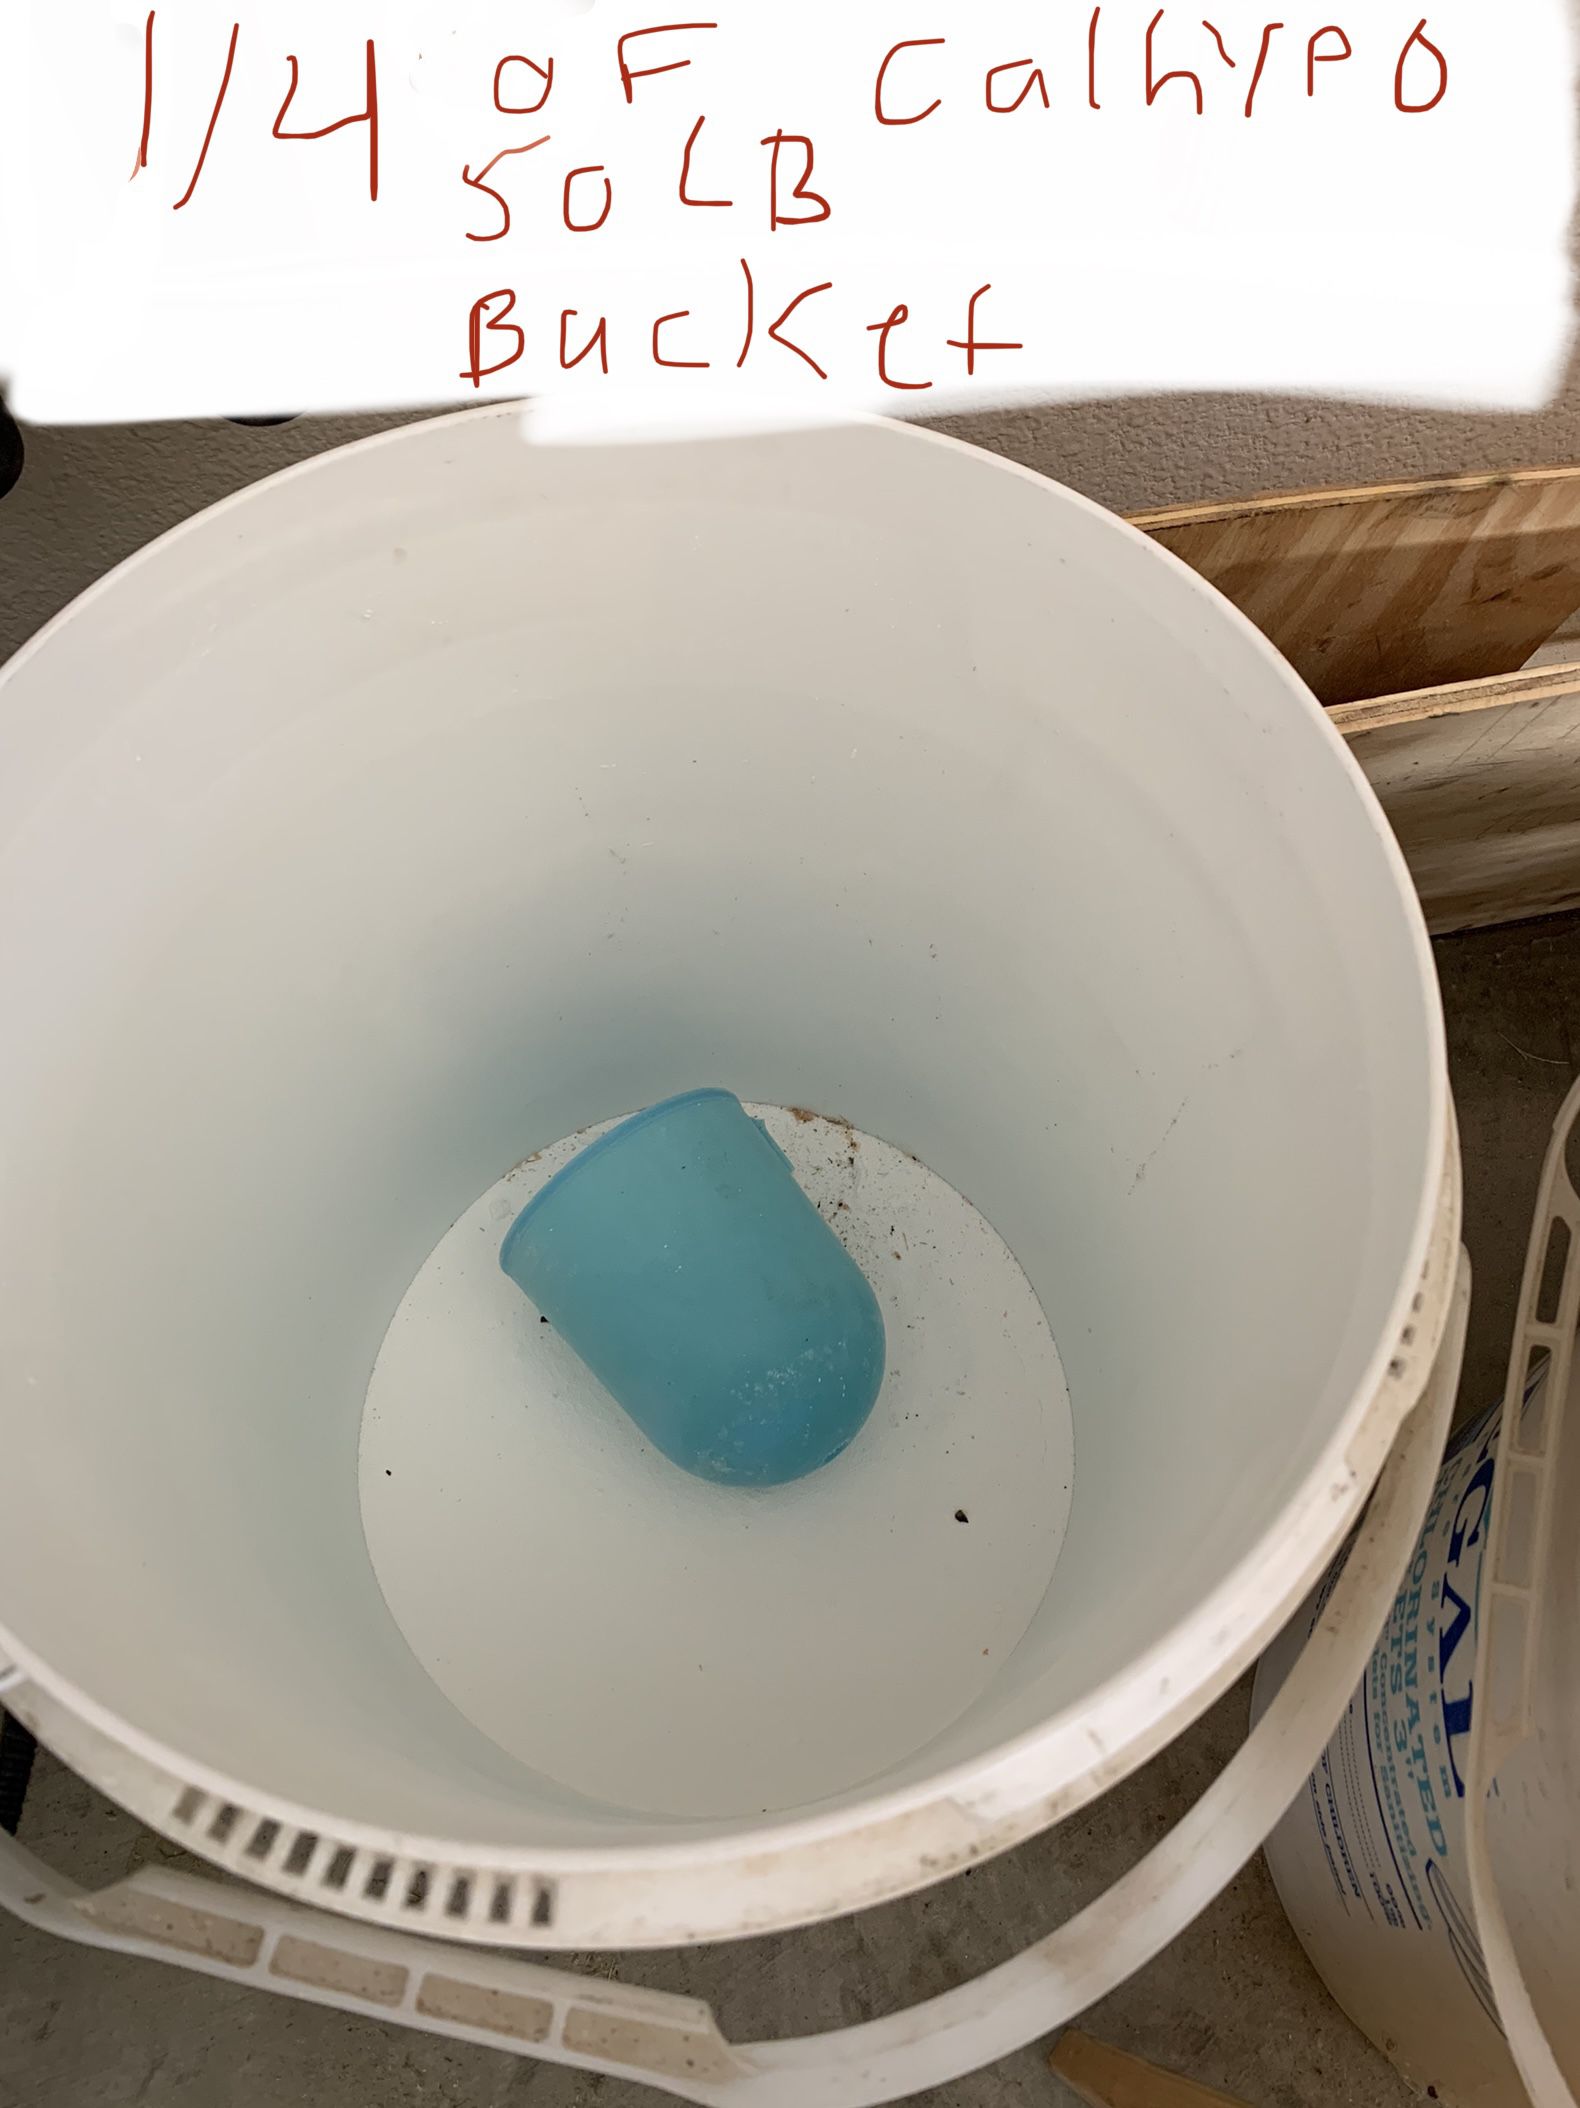 50lb Bucket Of DE / 1/4 Of 50lb Bucket Calhypo / 3/4 Of 50lb Bucket Dy-Chlor 